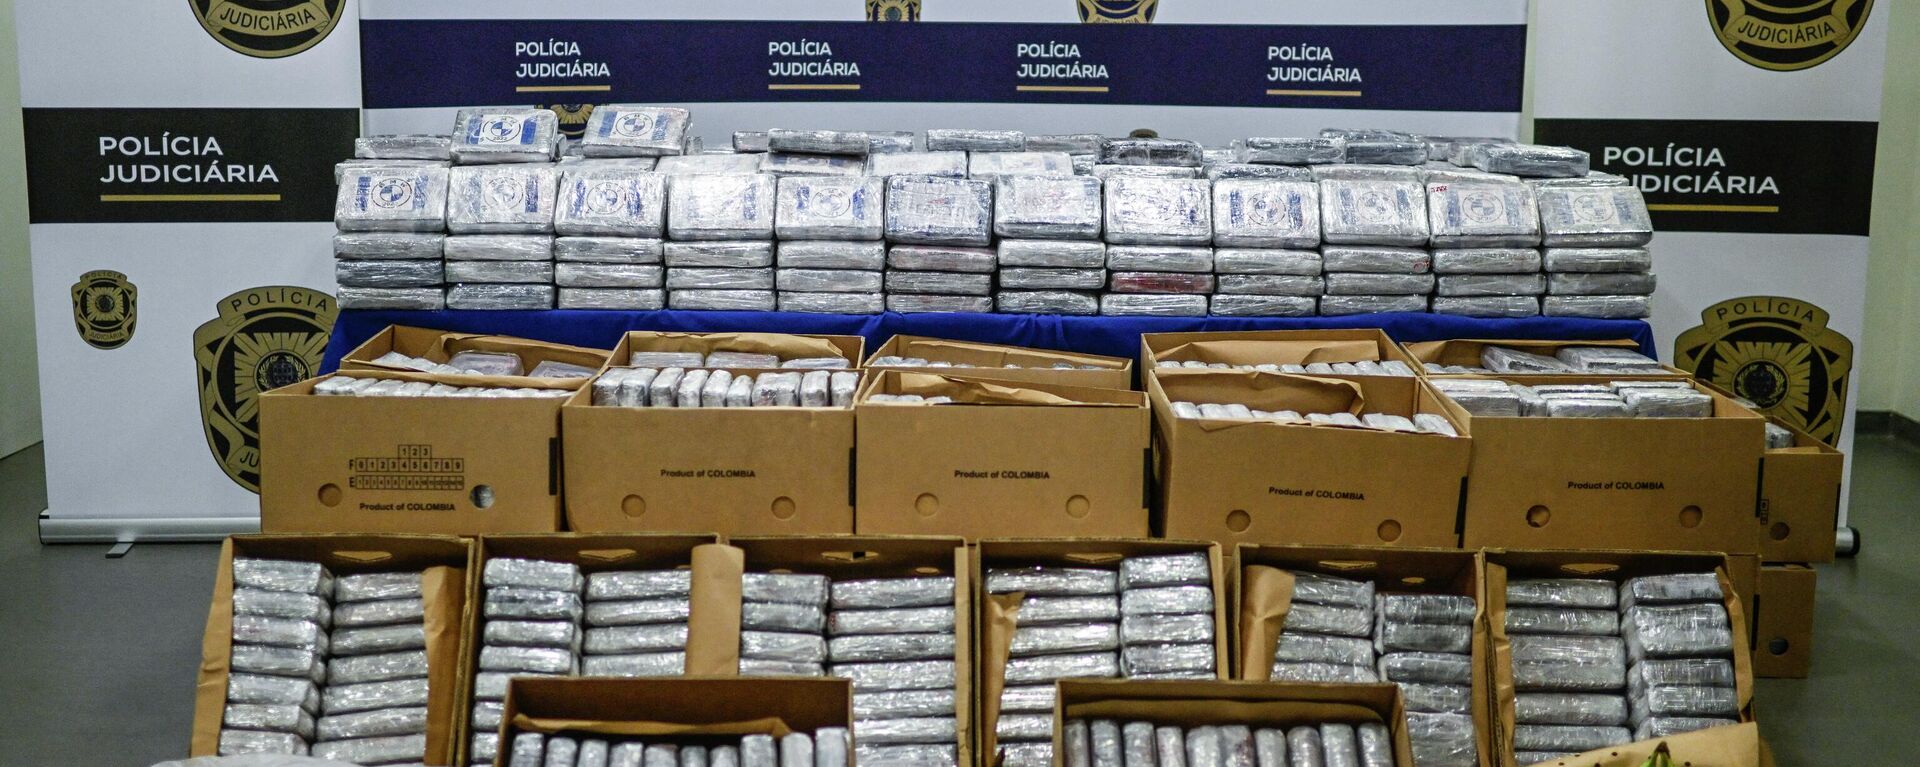 La Policía de Lisboa muestra cajas comerciales de plátanos procedentes de América Latina que contienen 4,2 toneladas de cocaína incautadas por las autoridades portuguesas en 2022.  - Sputnik Mundo, 1920, 25.08.2023